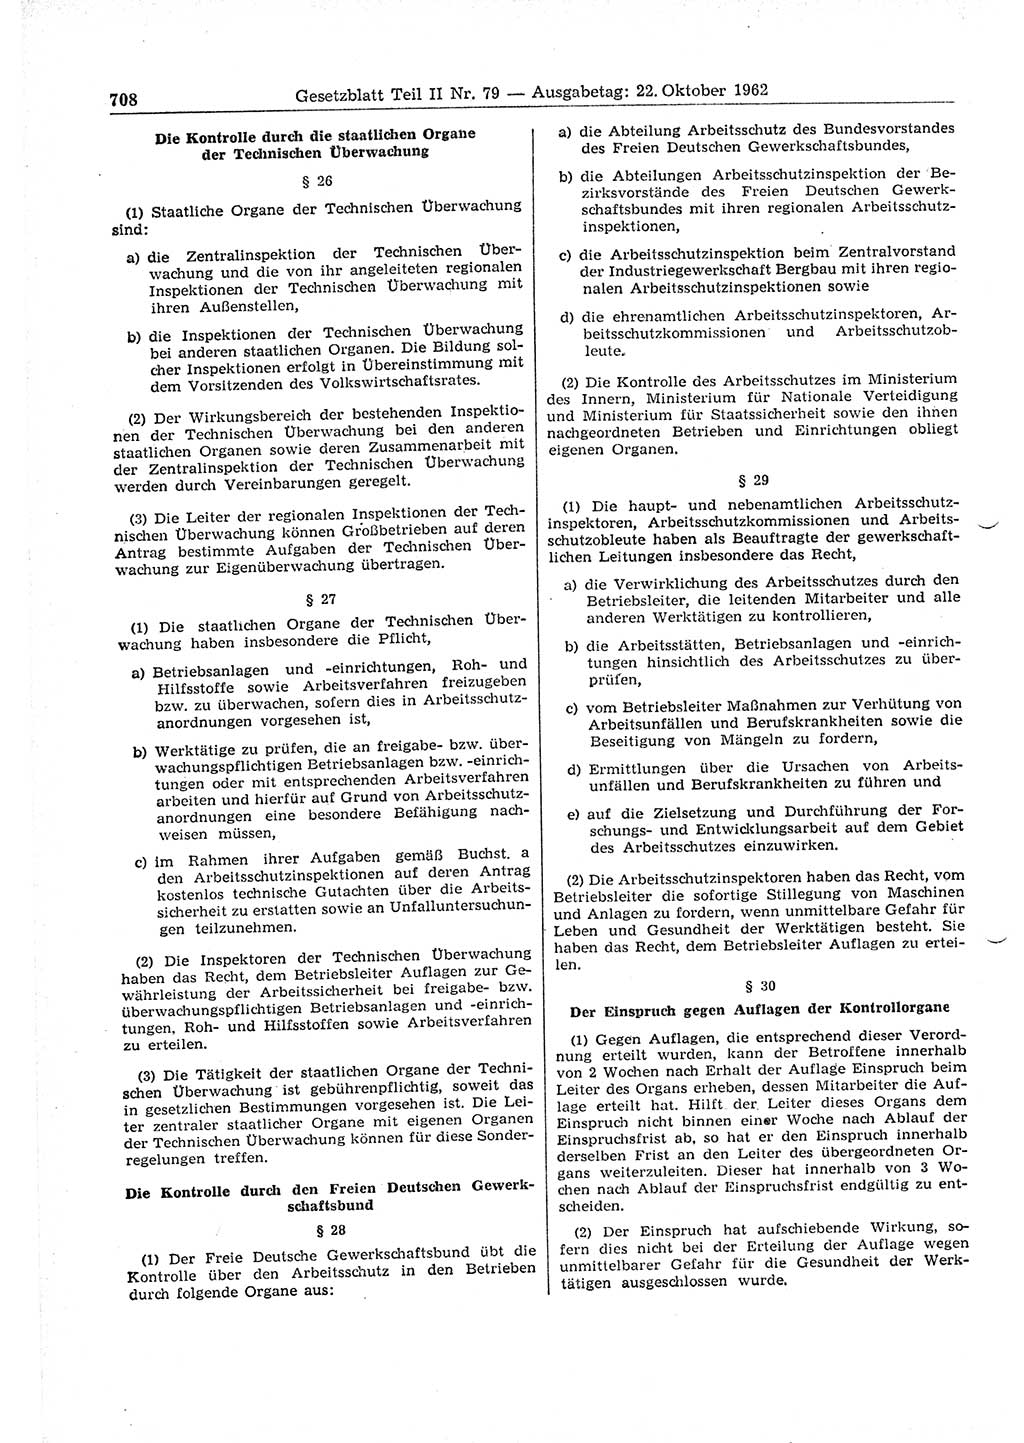 Gesetzblatt (GBl.) der Deutschen Demokratischen Republik (DDR) Teil ⅠⅠ 1962, Seite 708 (GBl. DDR ⅠⅠ 1962, S. 708)